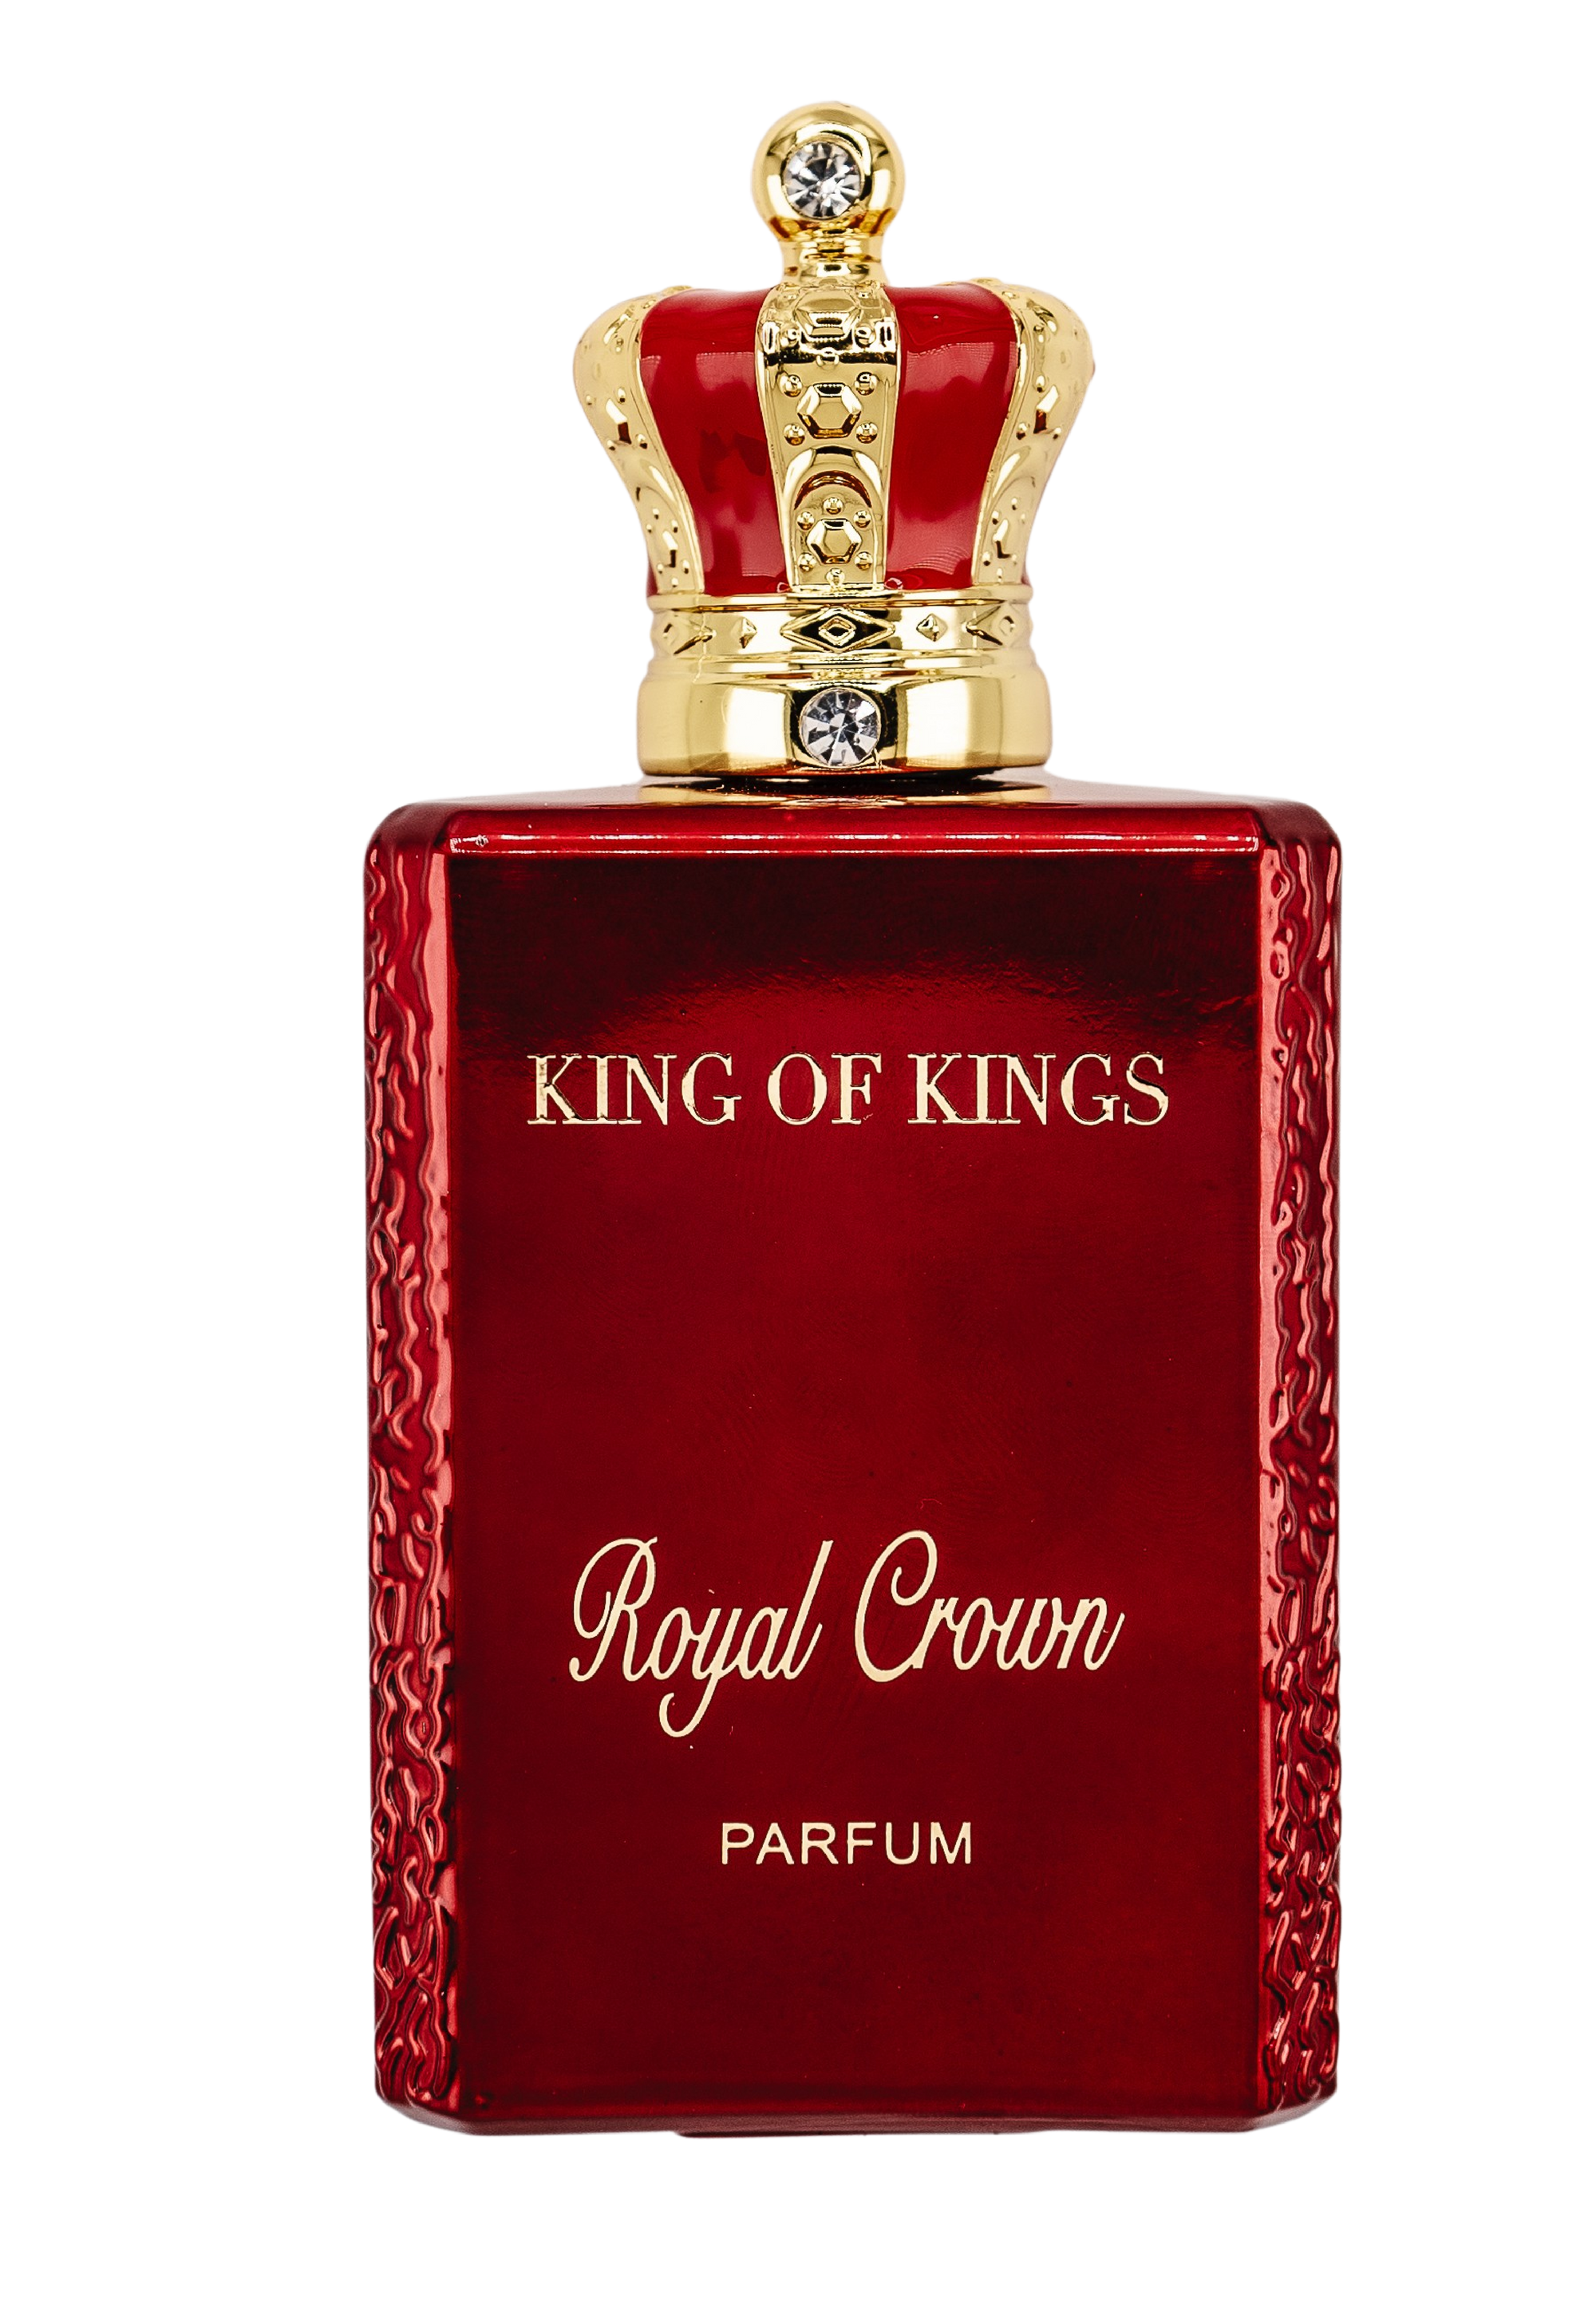 ROYAL CROWN 3.4 OZ PARFUM BY KING OF KINGS